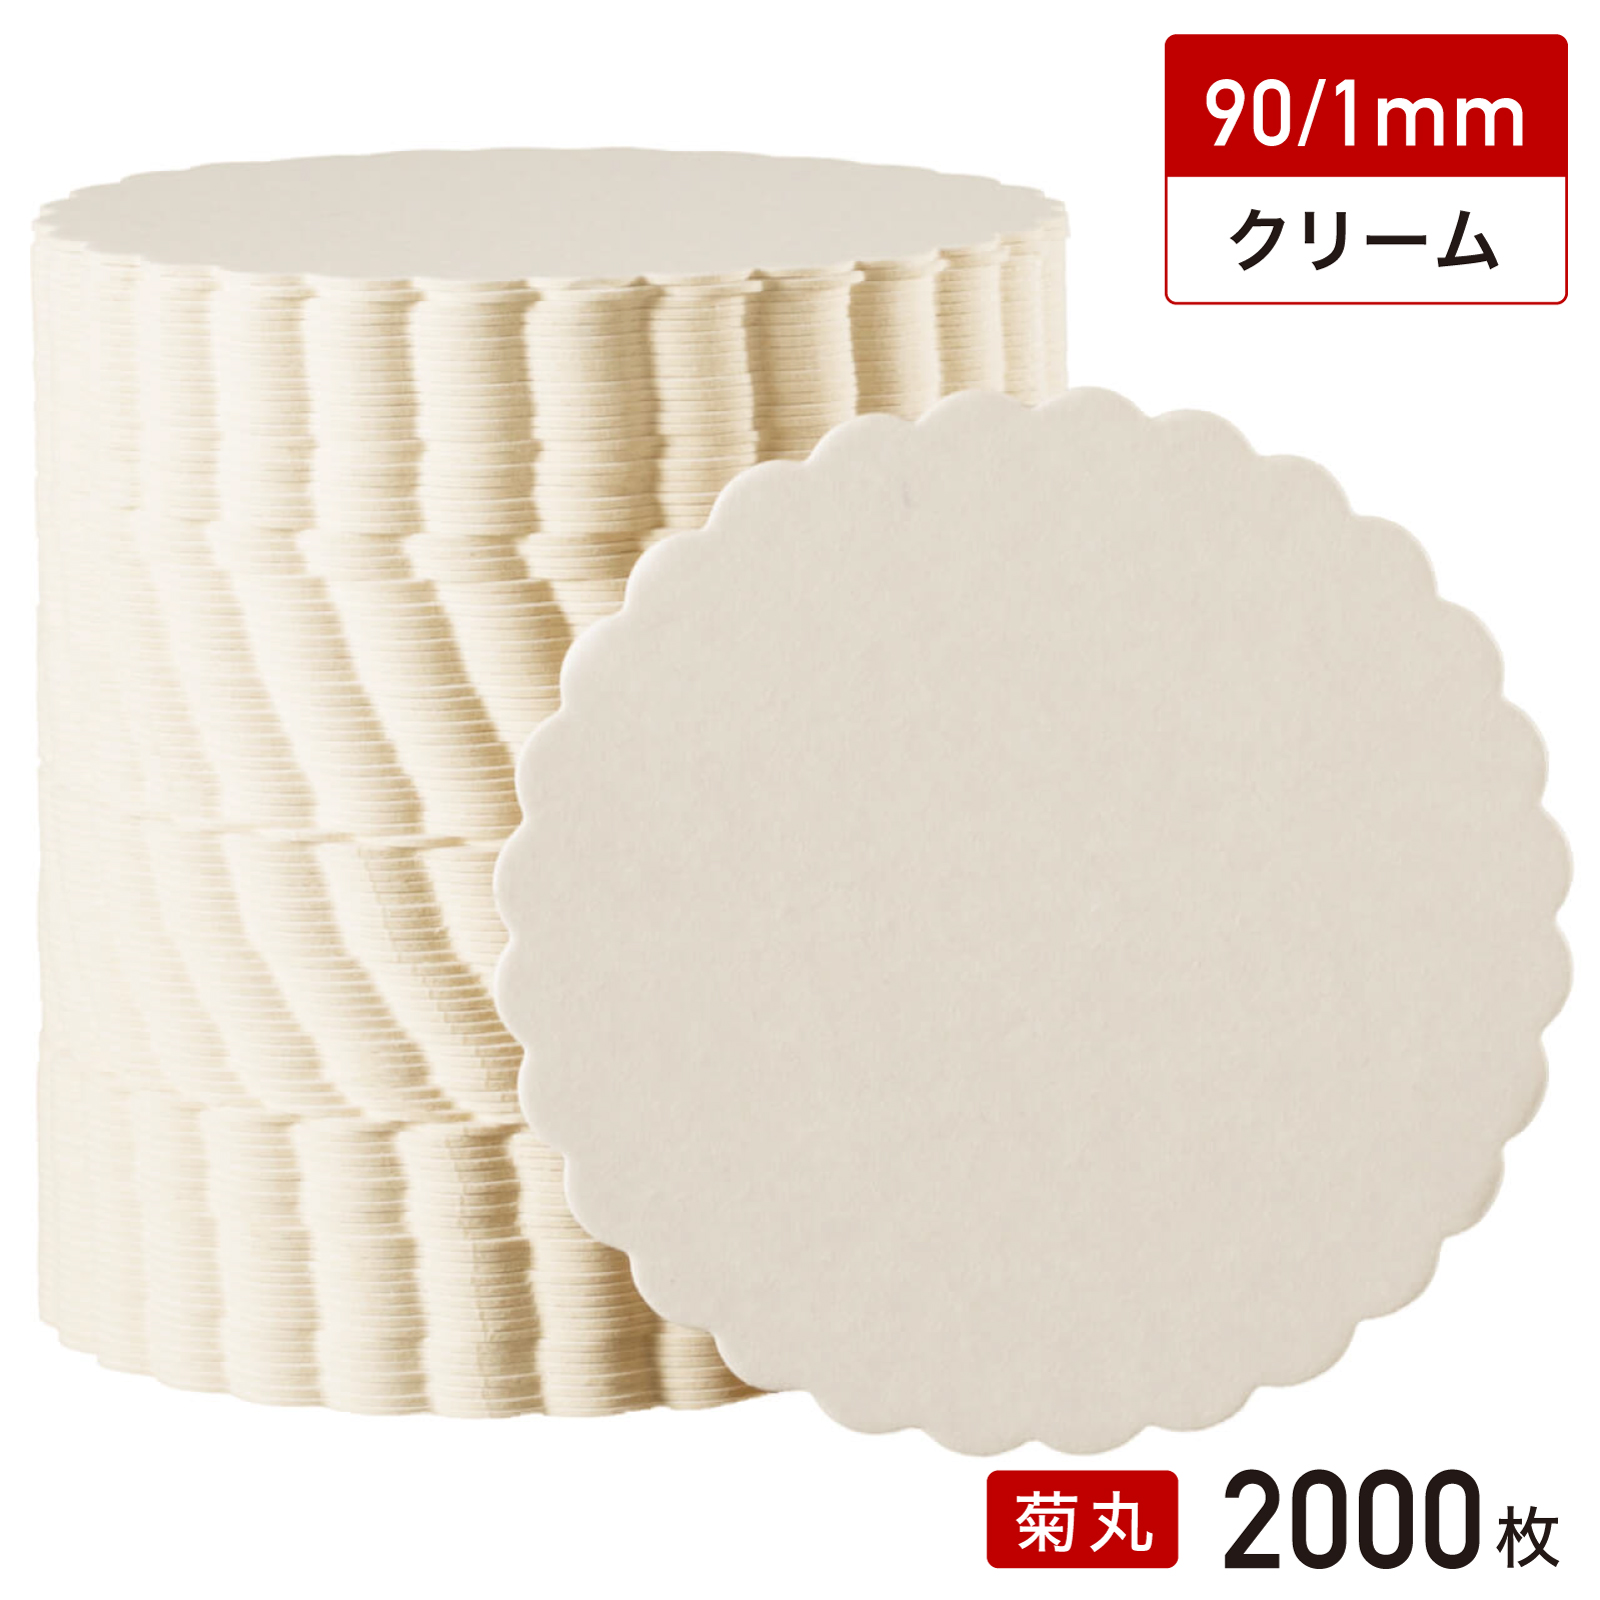 松山 紙 コースター 菊丸型 90/1mm（クリーム無地）2000枚の商品画像